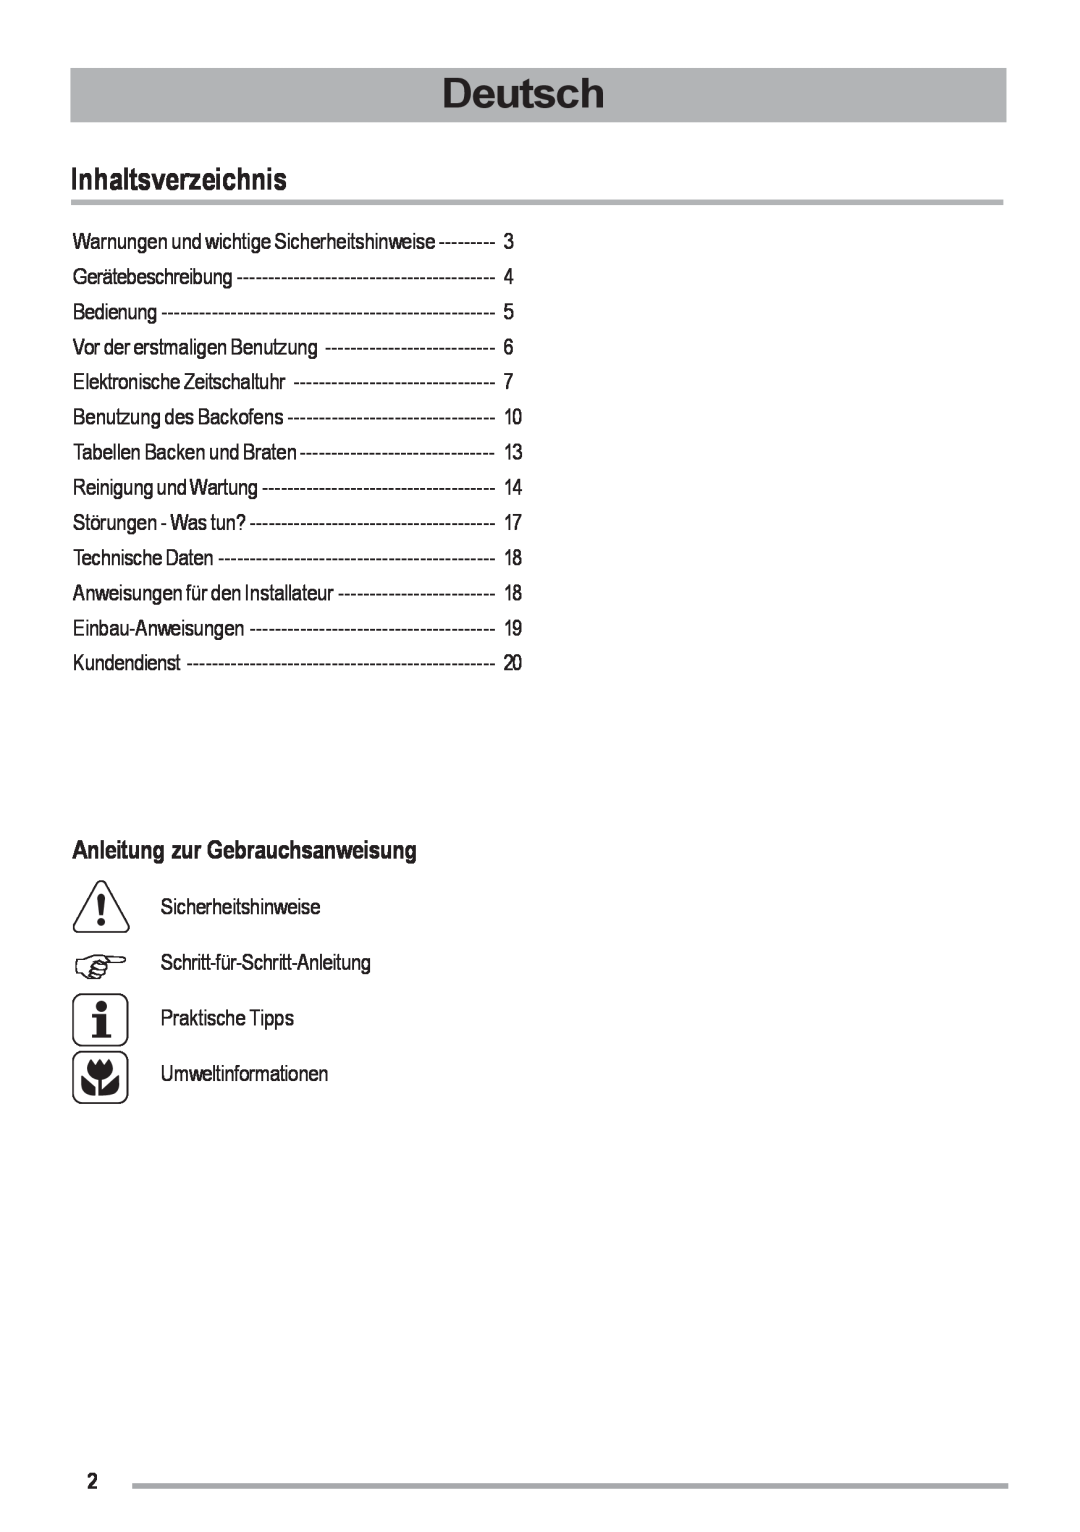 Zanussi ZOU 461 Deutsch, Inhaltsverzeichnis, Anleitung zur Gebrauchsanweisung, Gerätebeschreibung, Bedienung, Kundendienst 